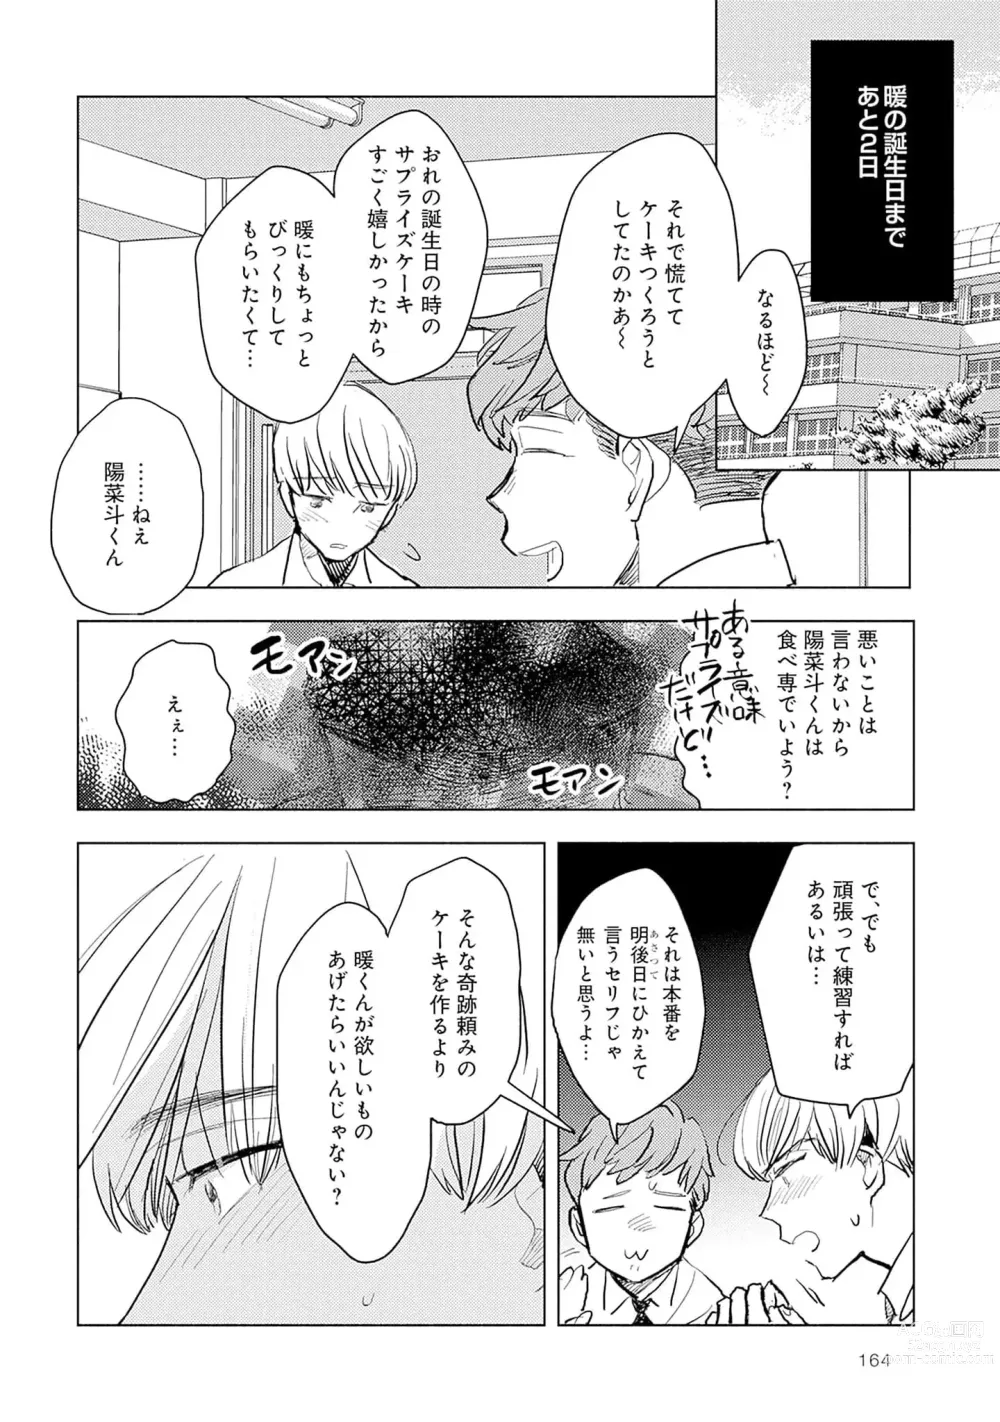 Page 166 of manga Strawberry na Days 2